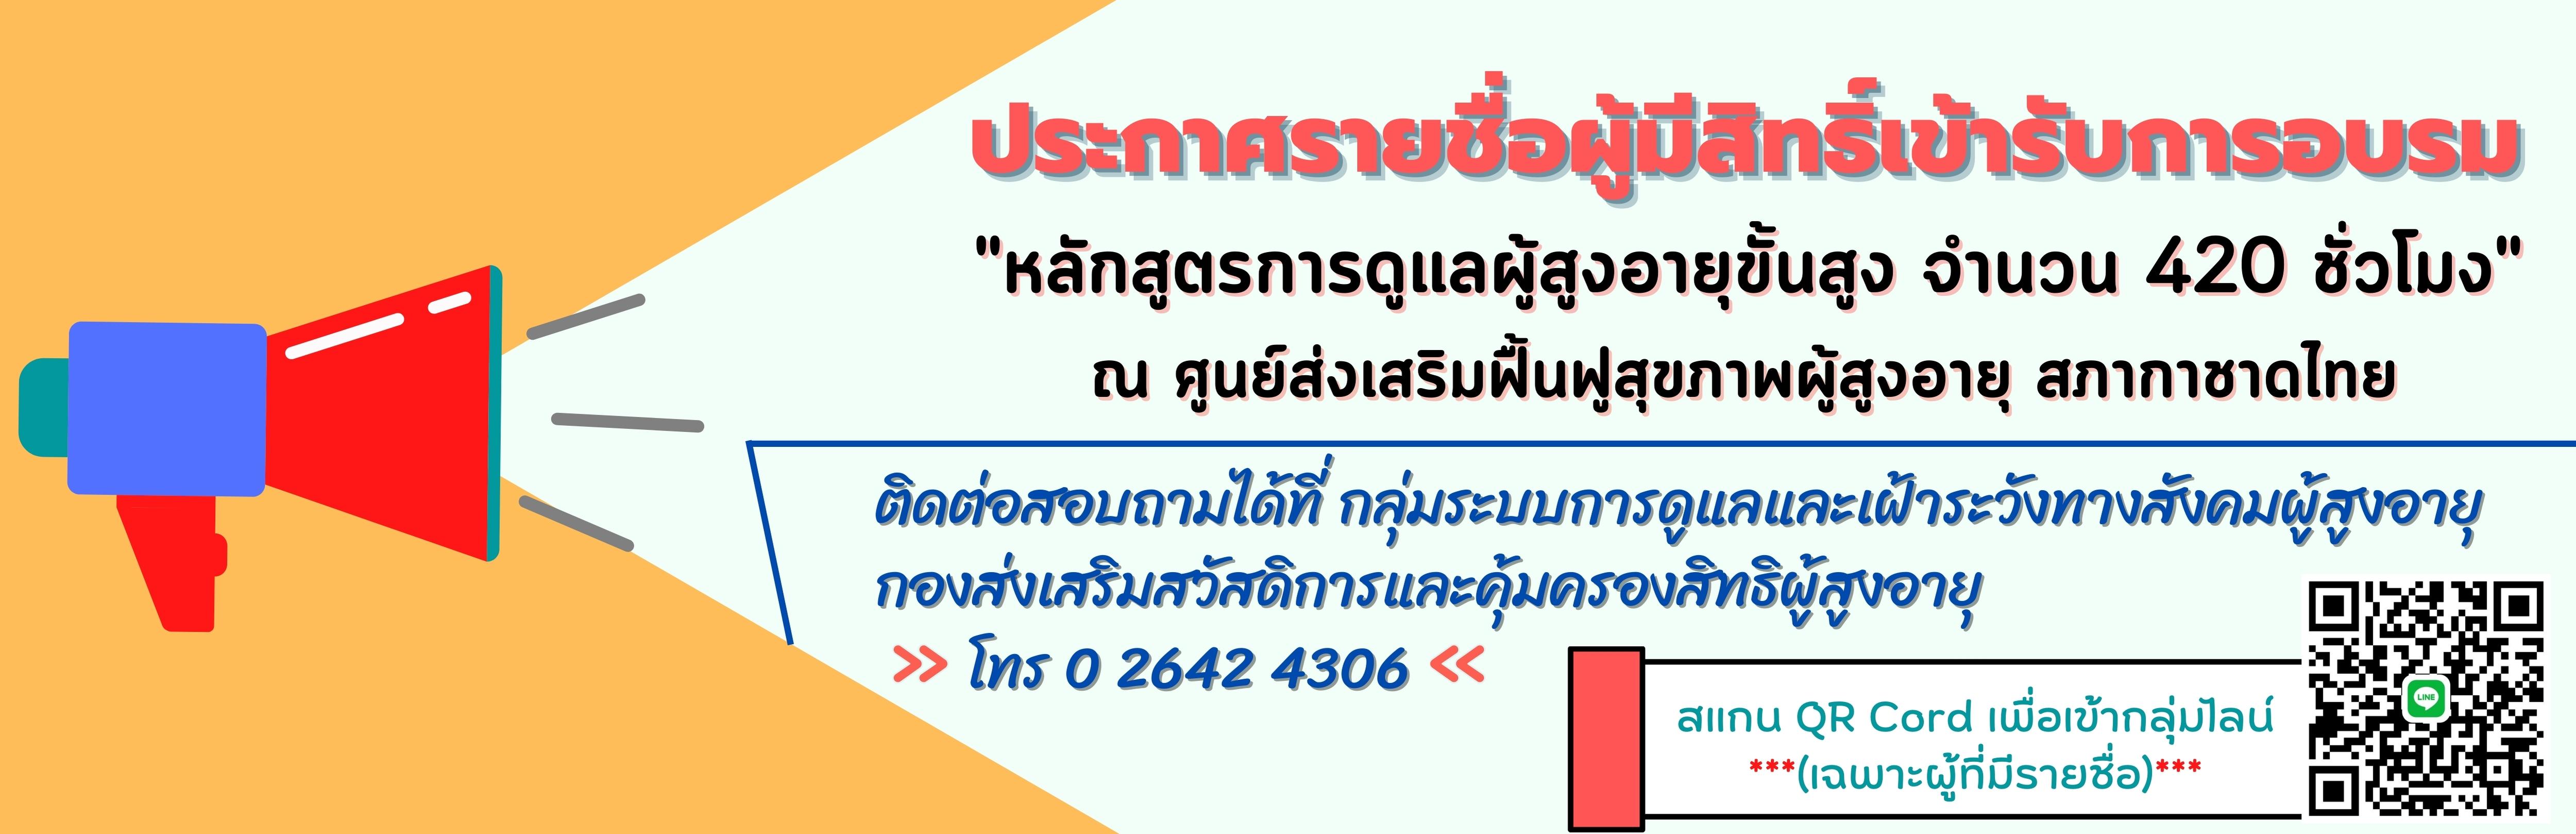 ประกาศรายชื่อผู้มีสิทธิ์เข้าอบรม หลักสูตรการดูแลผู้สูงอายุชั้นสูง 420 ชั่วโมง สภากาชาดไทย